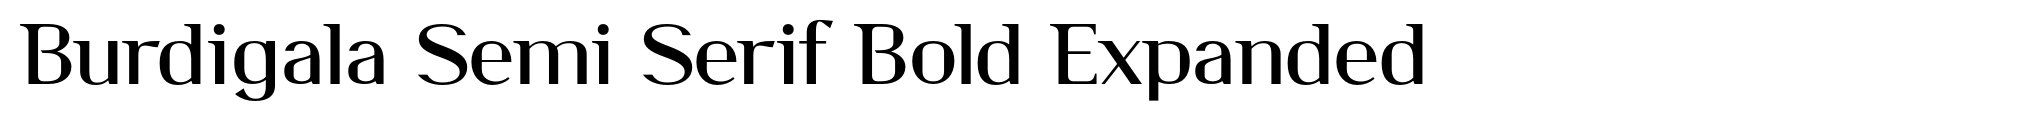 Burdigala Semi Serif Bold Expanded image